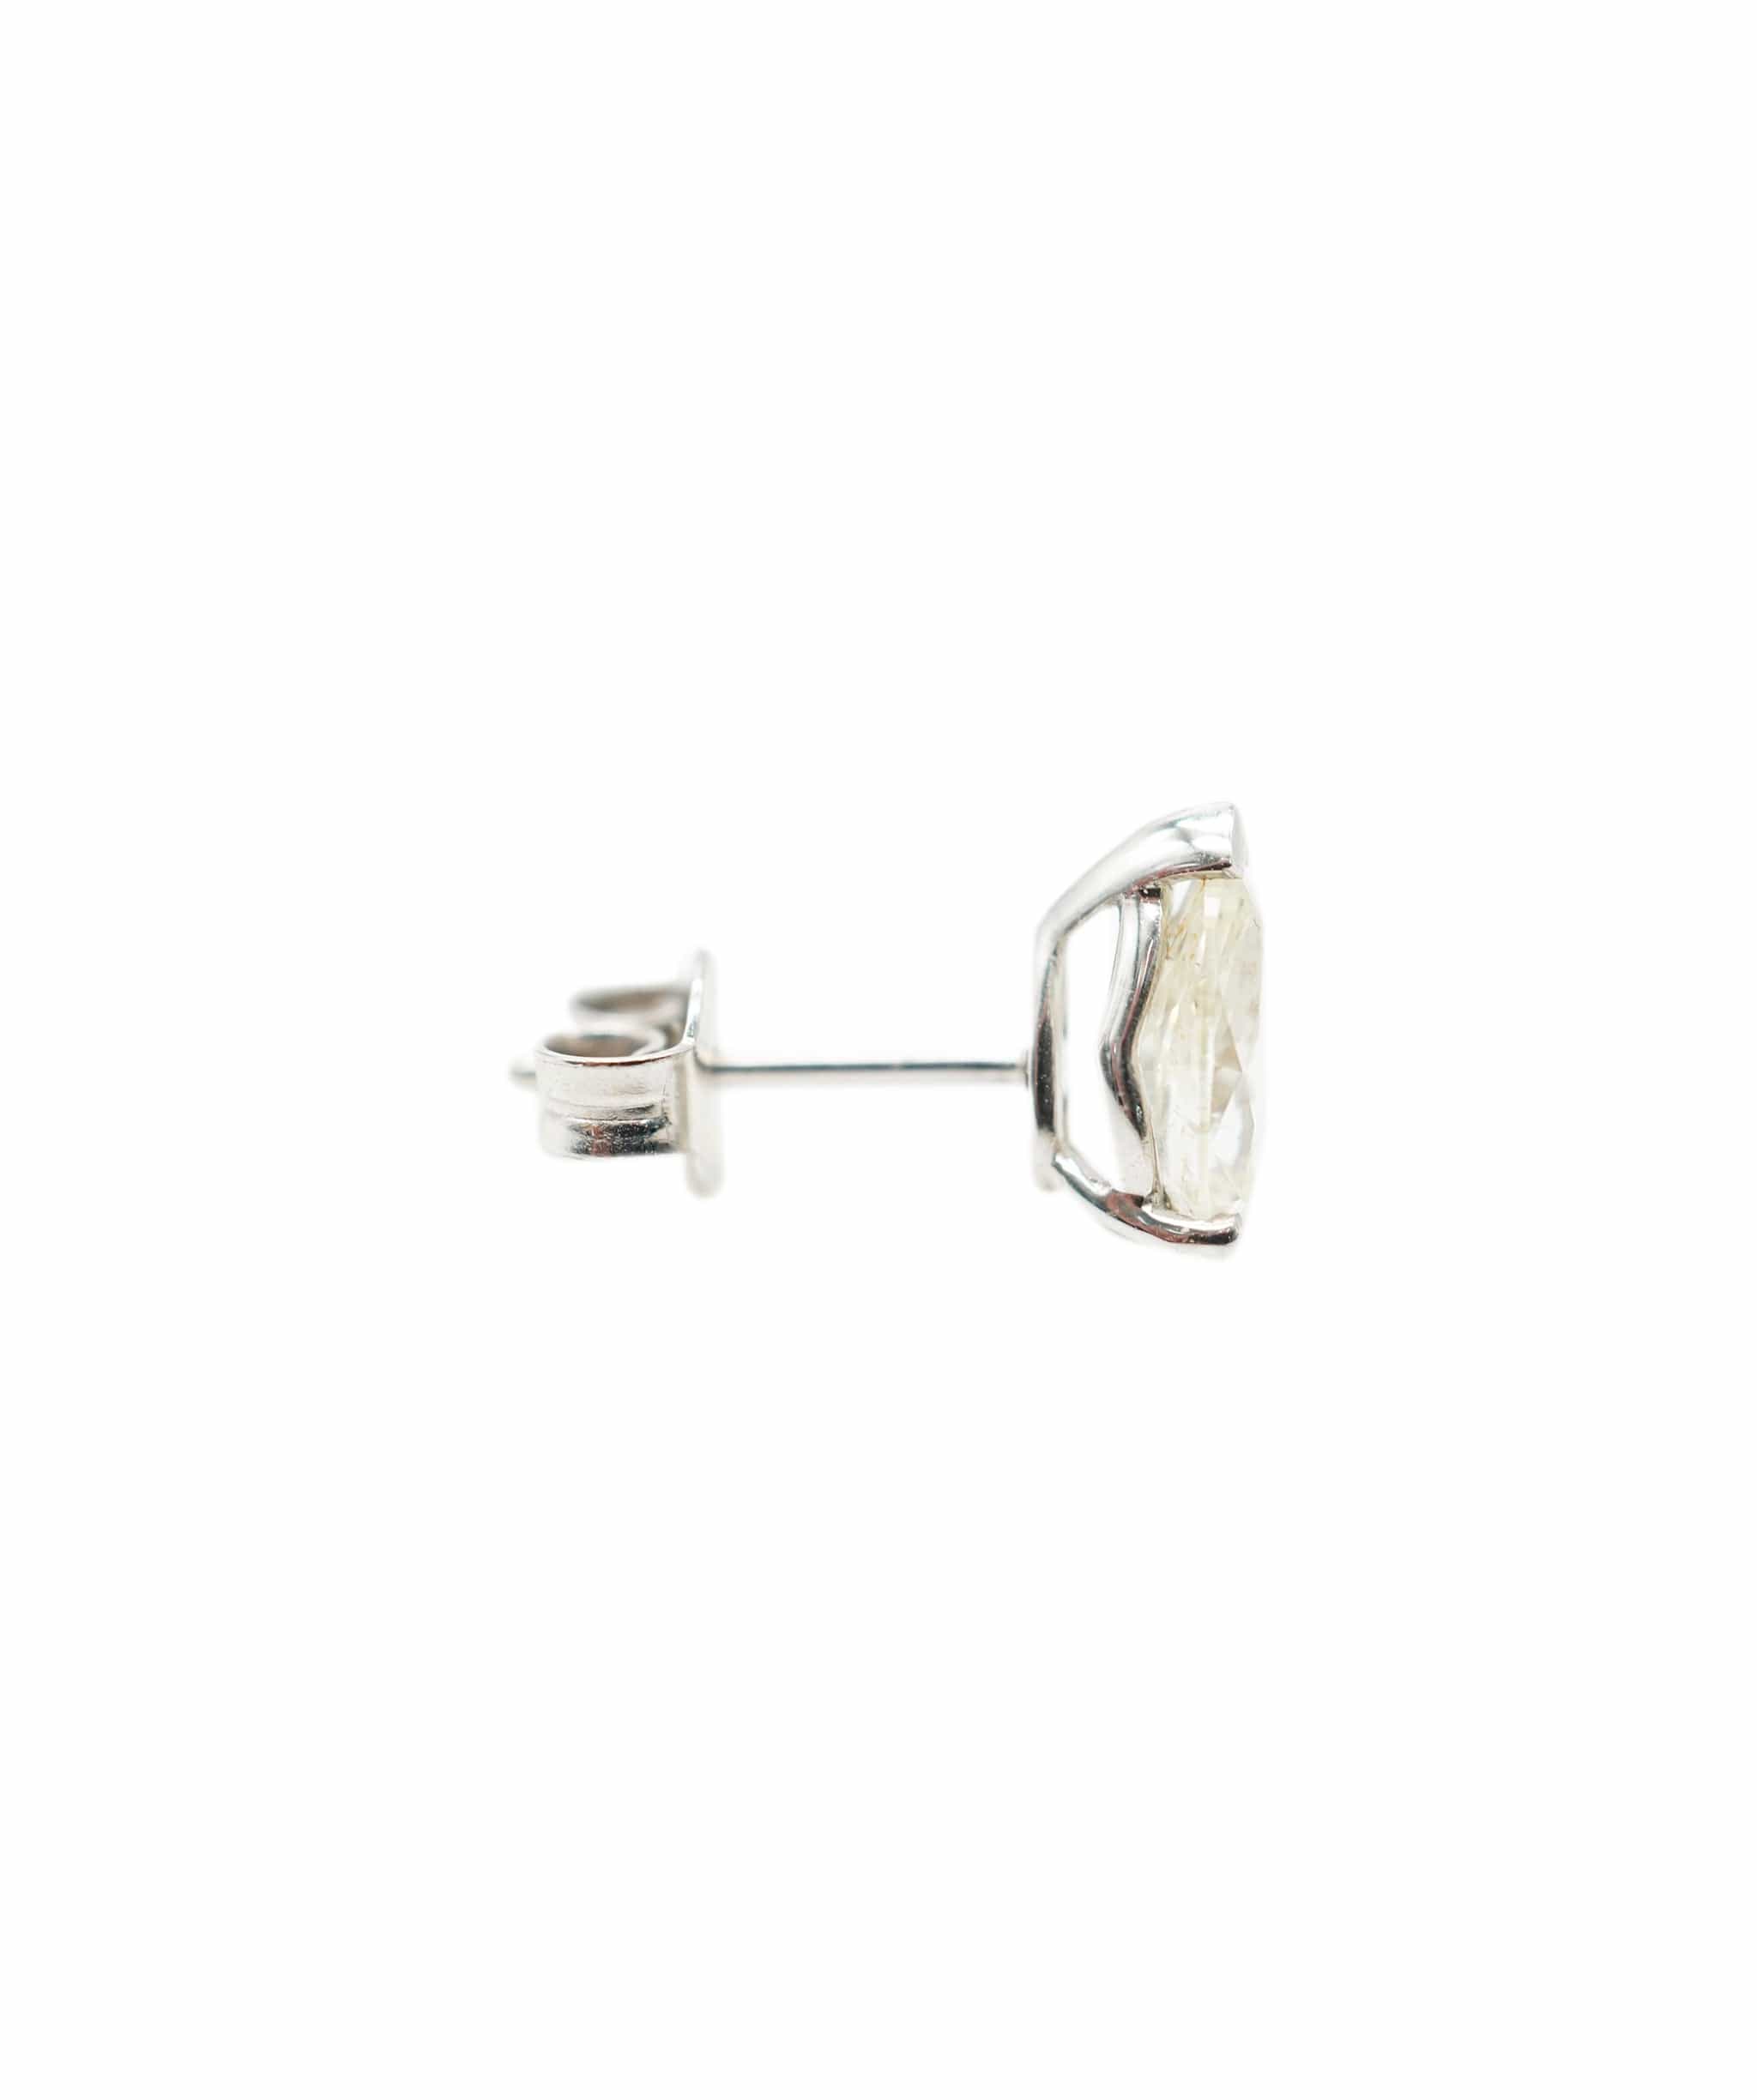 Luxury Promise Martini Earrings WG 1.05 ct P/S JK/VS1 ASC4504